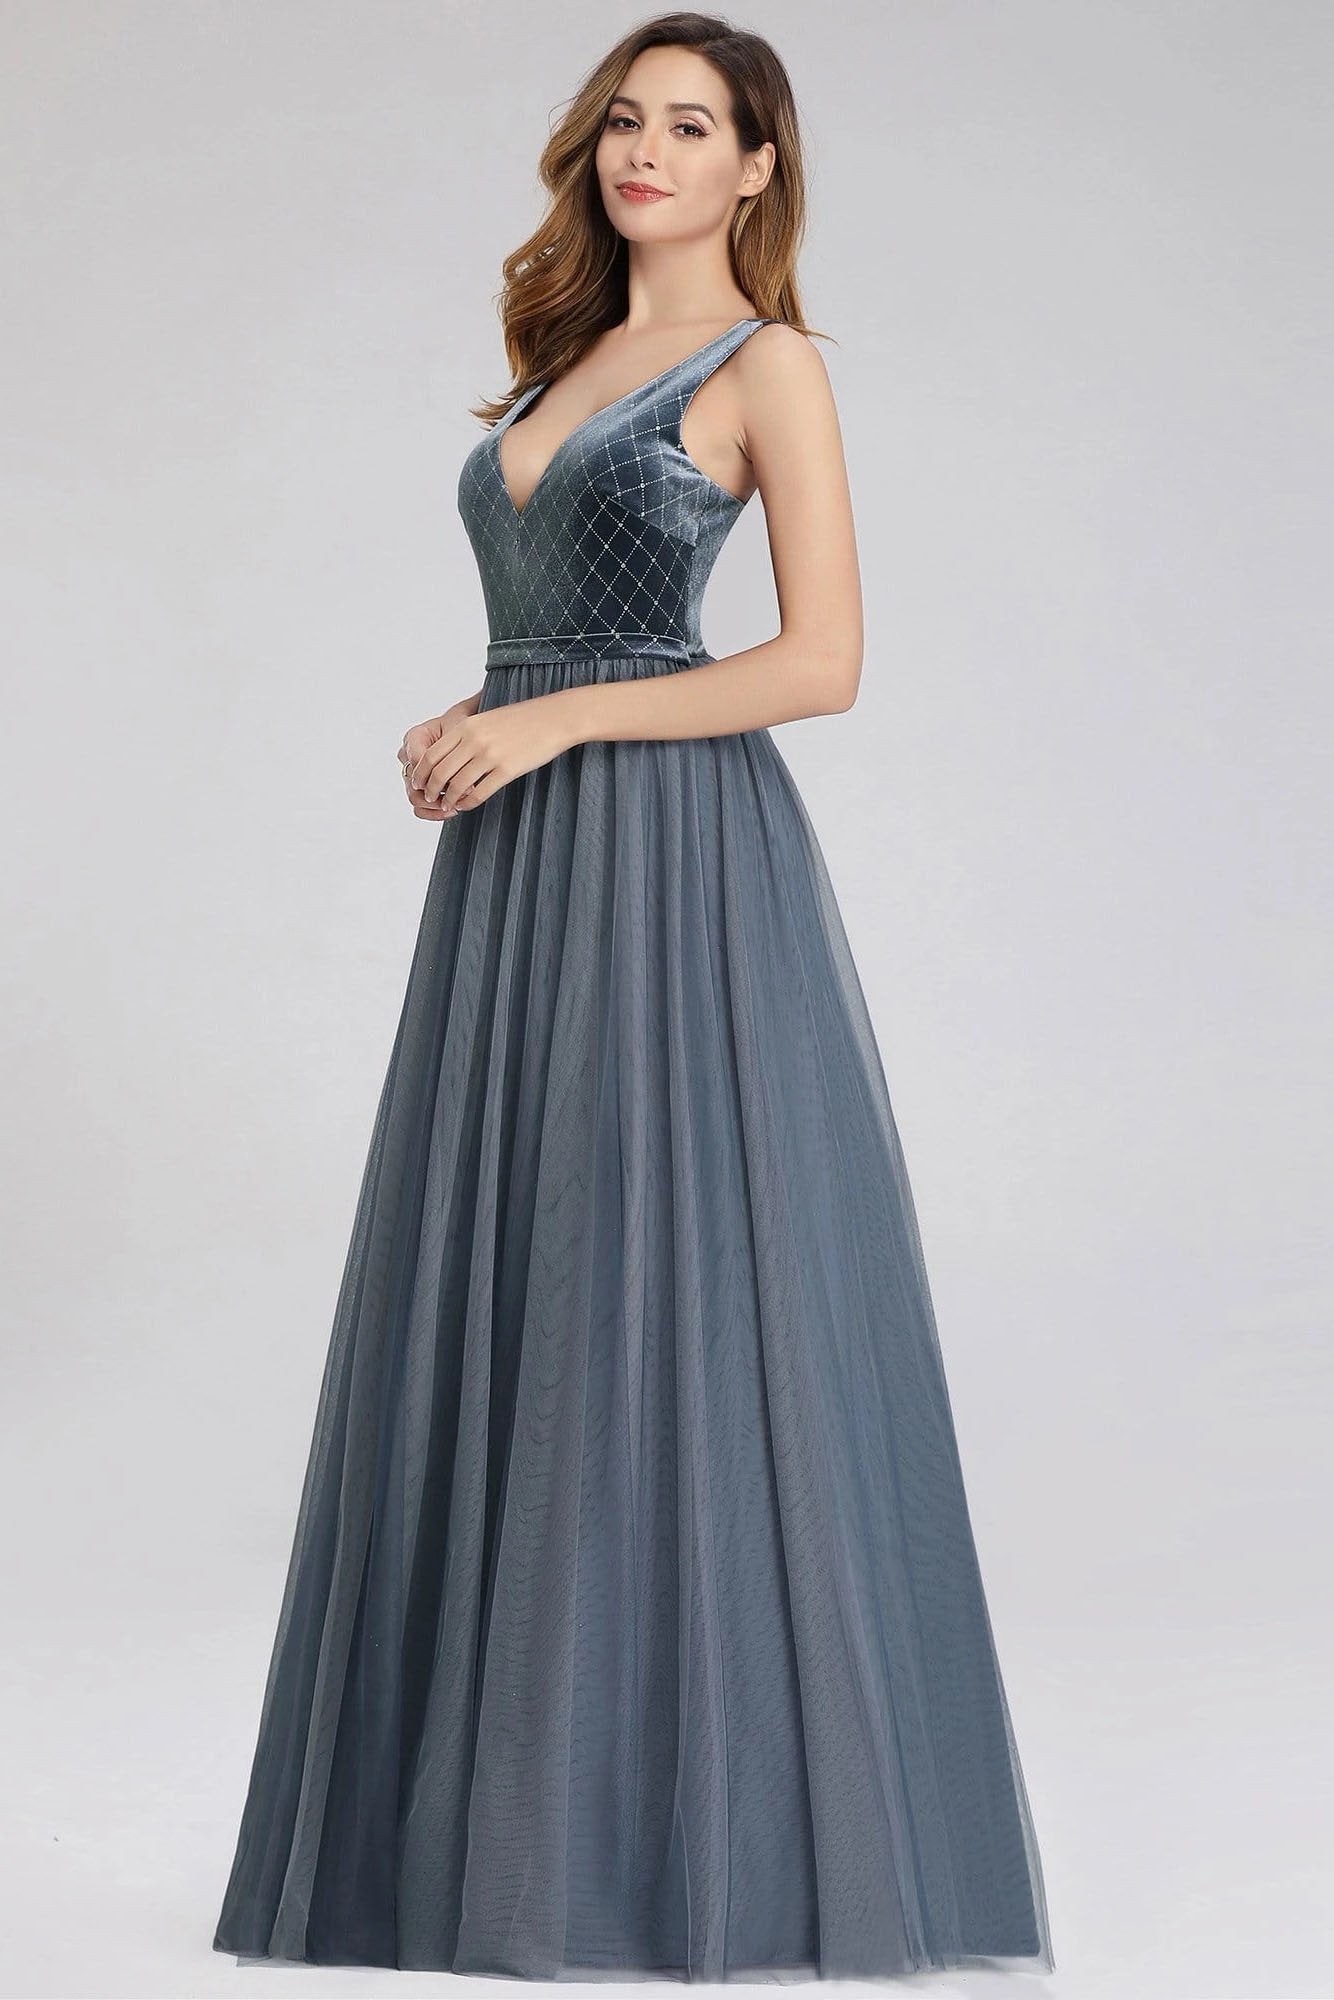 A-Line V-Neck Sleeveless Blue Floor-length Evening Dress Cheap Prom Dresses STC15055